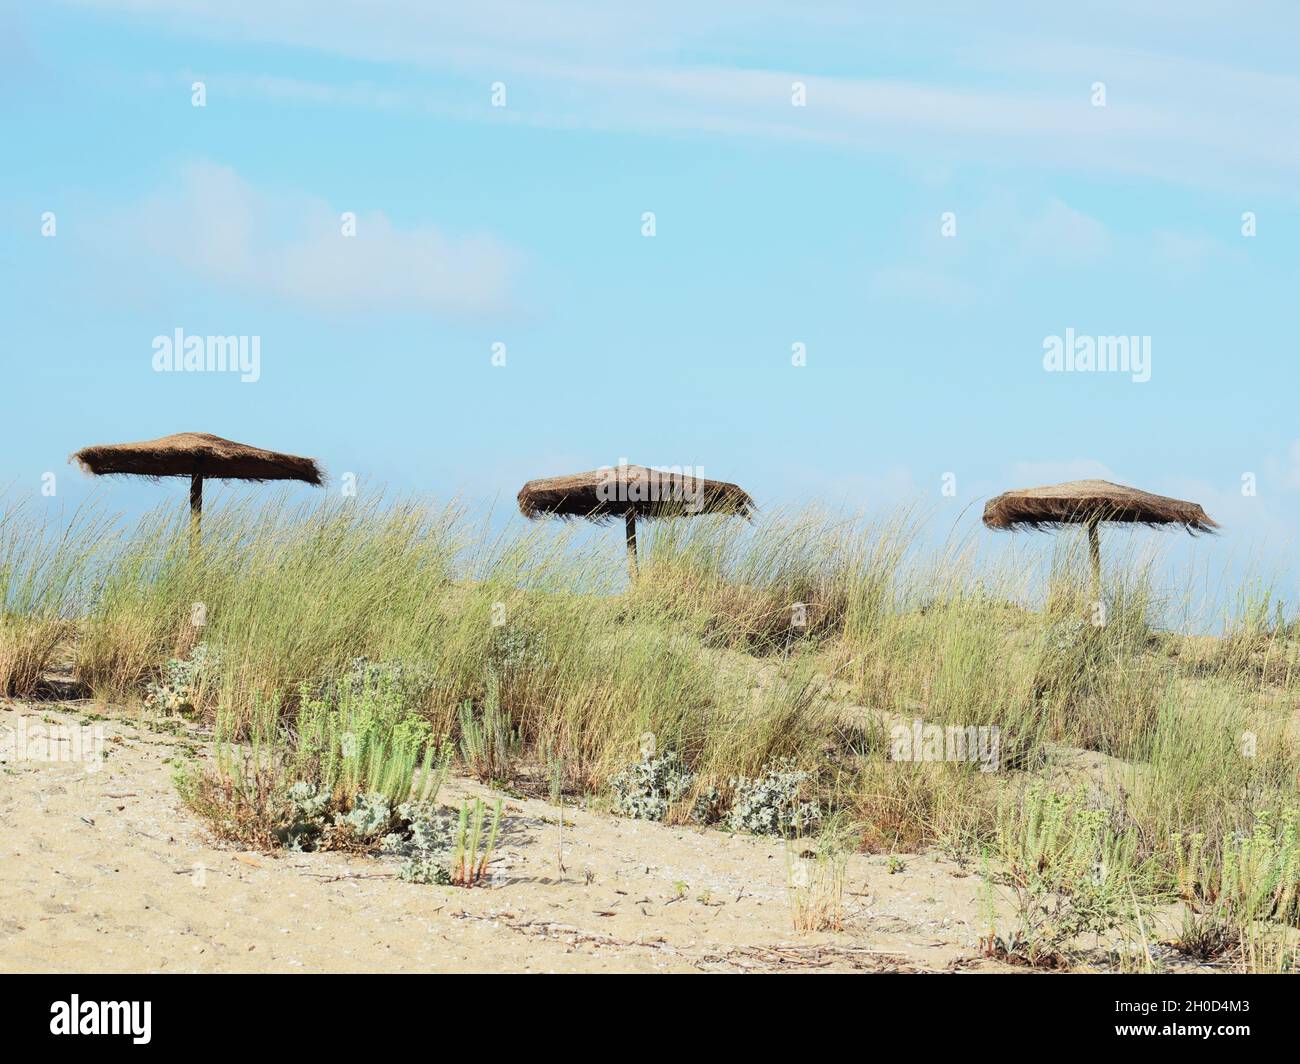 Une composition centrale de trois plages seules unbrellas.la photo est prise pendant l'été à Sinemorets, Bulgarie.C'était une belle journée sur la plage. Banque D'Images